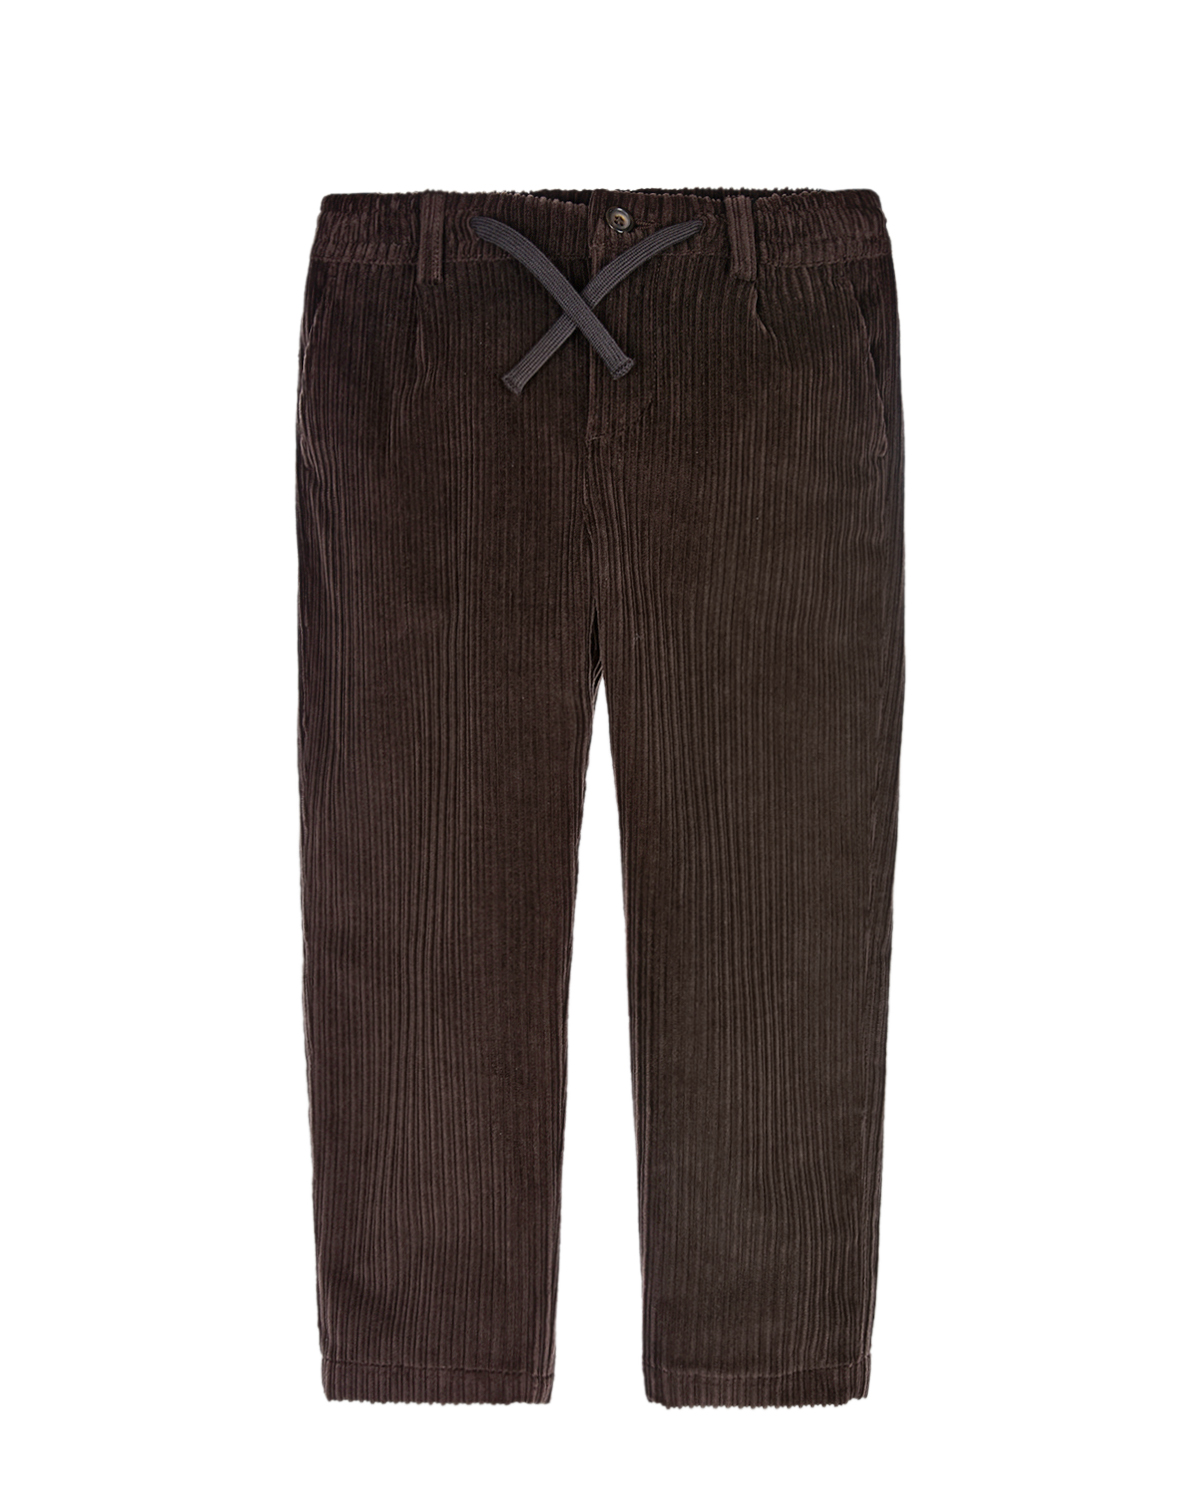 Вельветовые брюки с поясом на кулиске Dolce&Gabbana детские, размер 98, цвет коричневый - фото 1